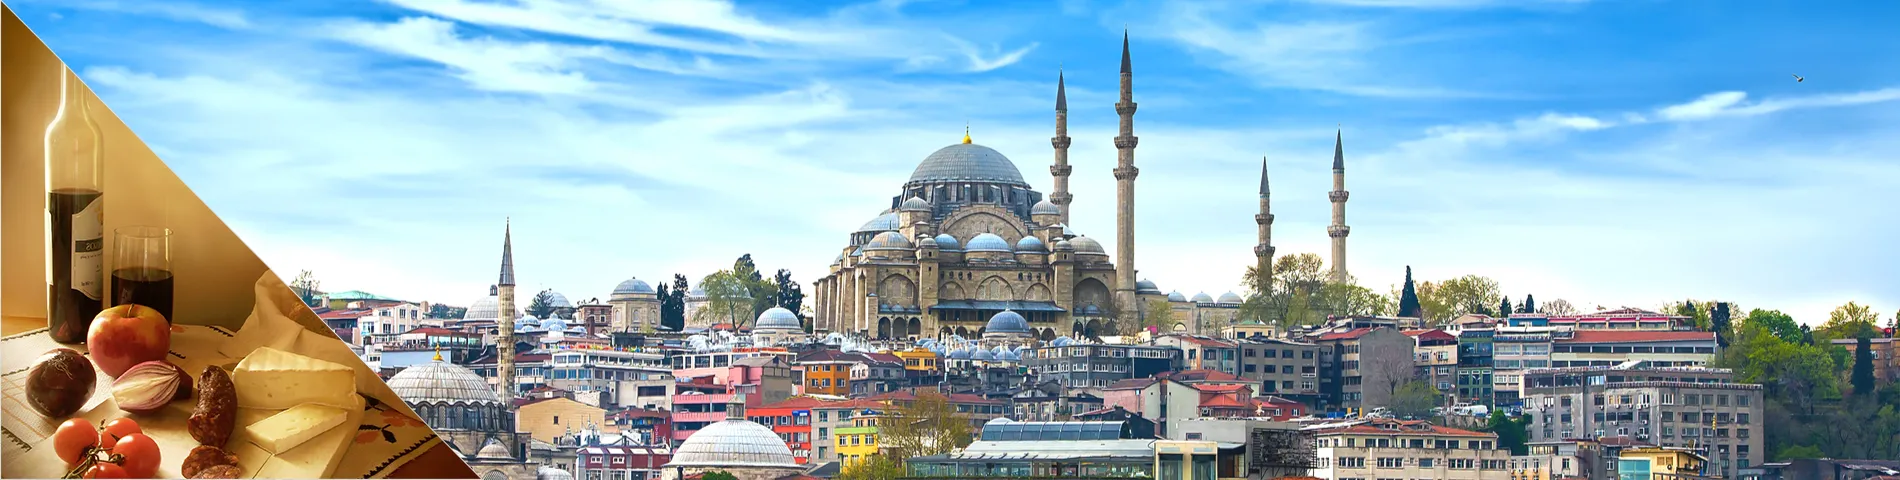 Туреччина - турецька та пізнання культури